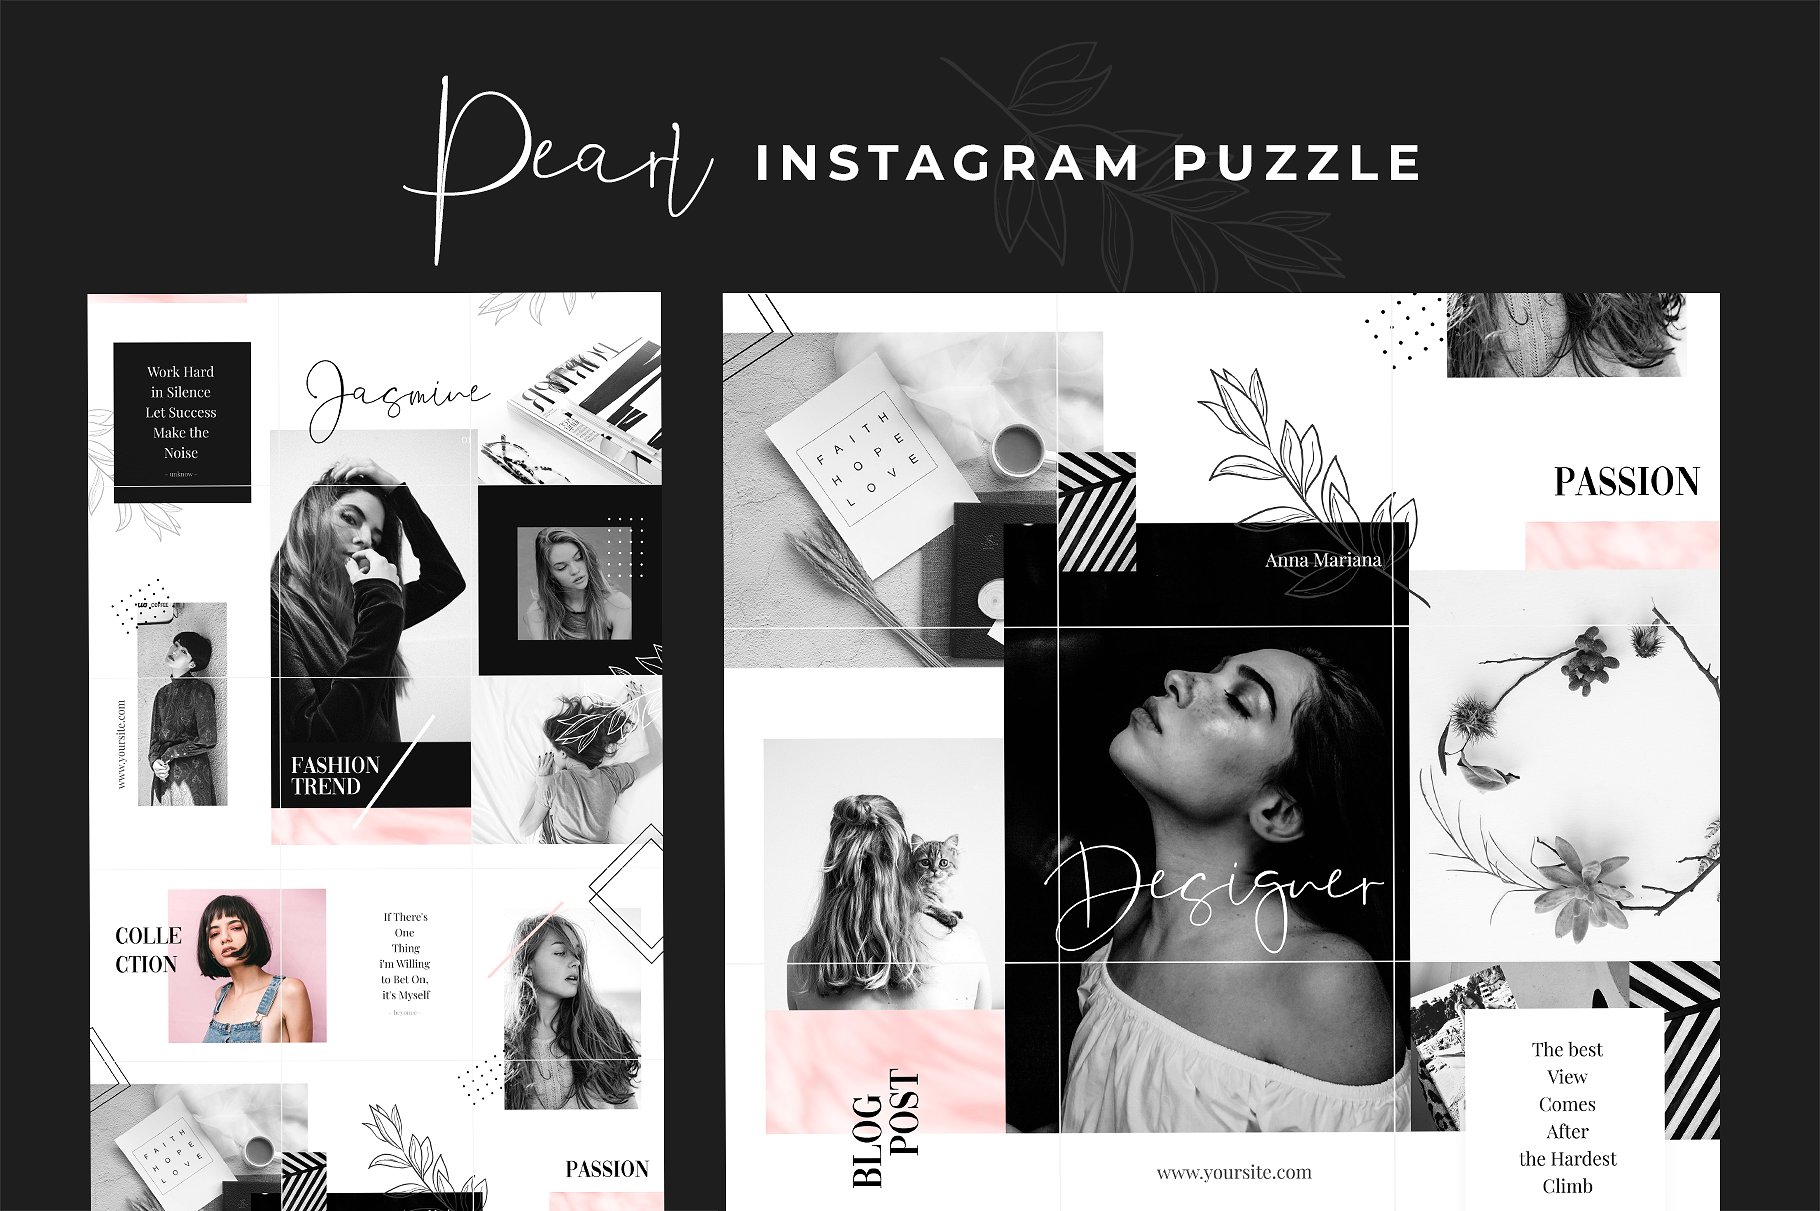 现代黑色主题的instagram社交媒体模板蚂蚁素材精选 Instagram Puzzle – Pearl [psd]插图